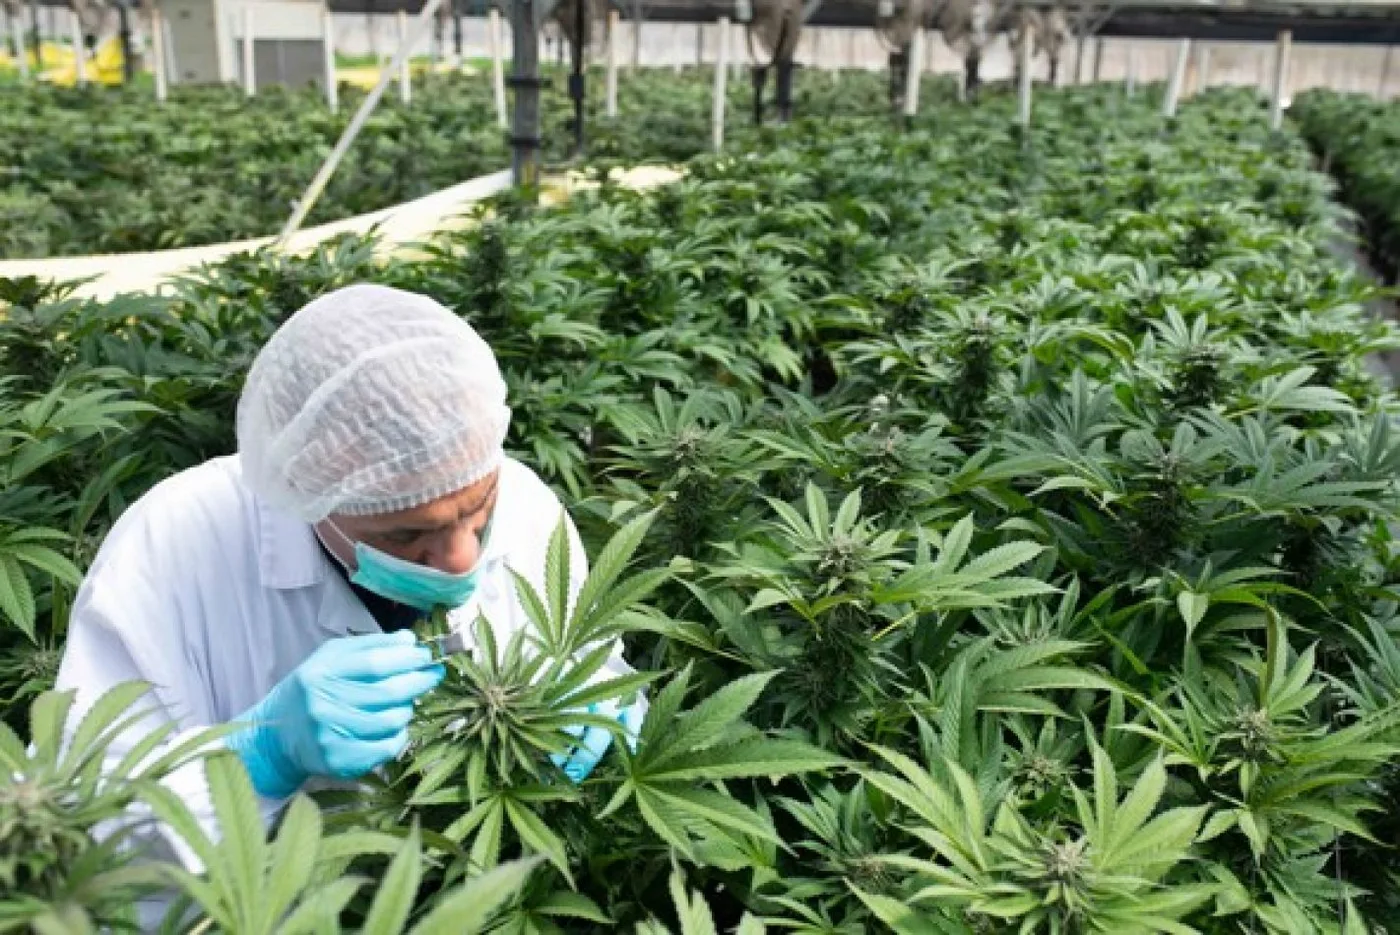 Posibilidades. La producción de cannabis requiere de un serio debate, reclaman desde la cámara del sector, para la regulación de la actividad.